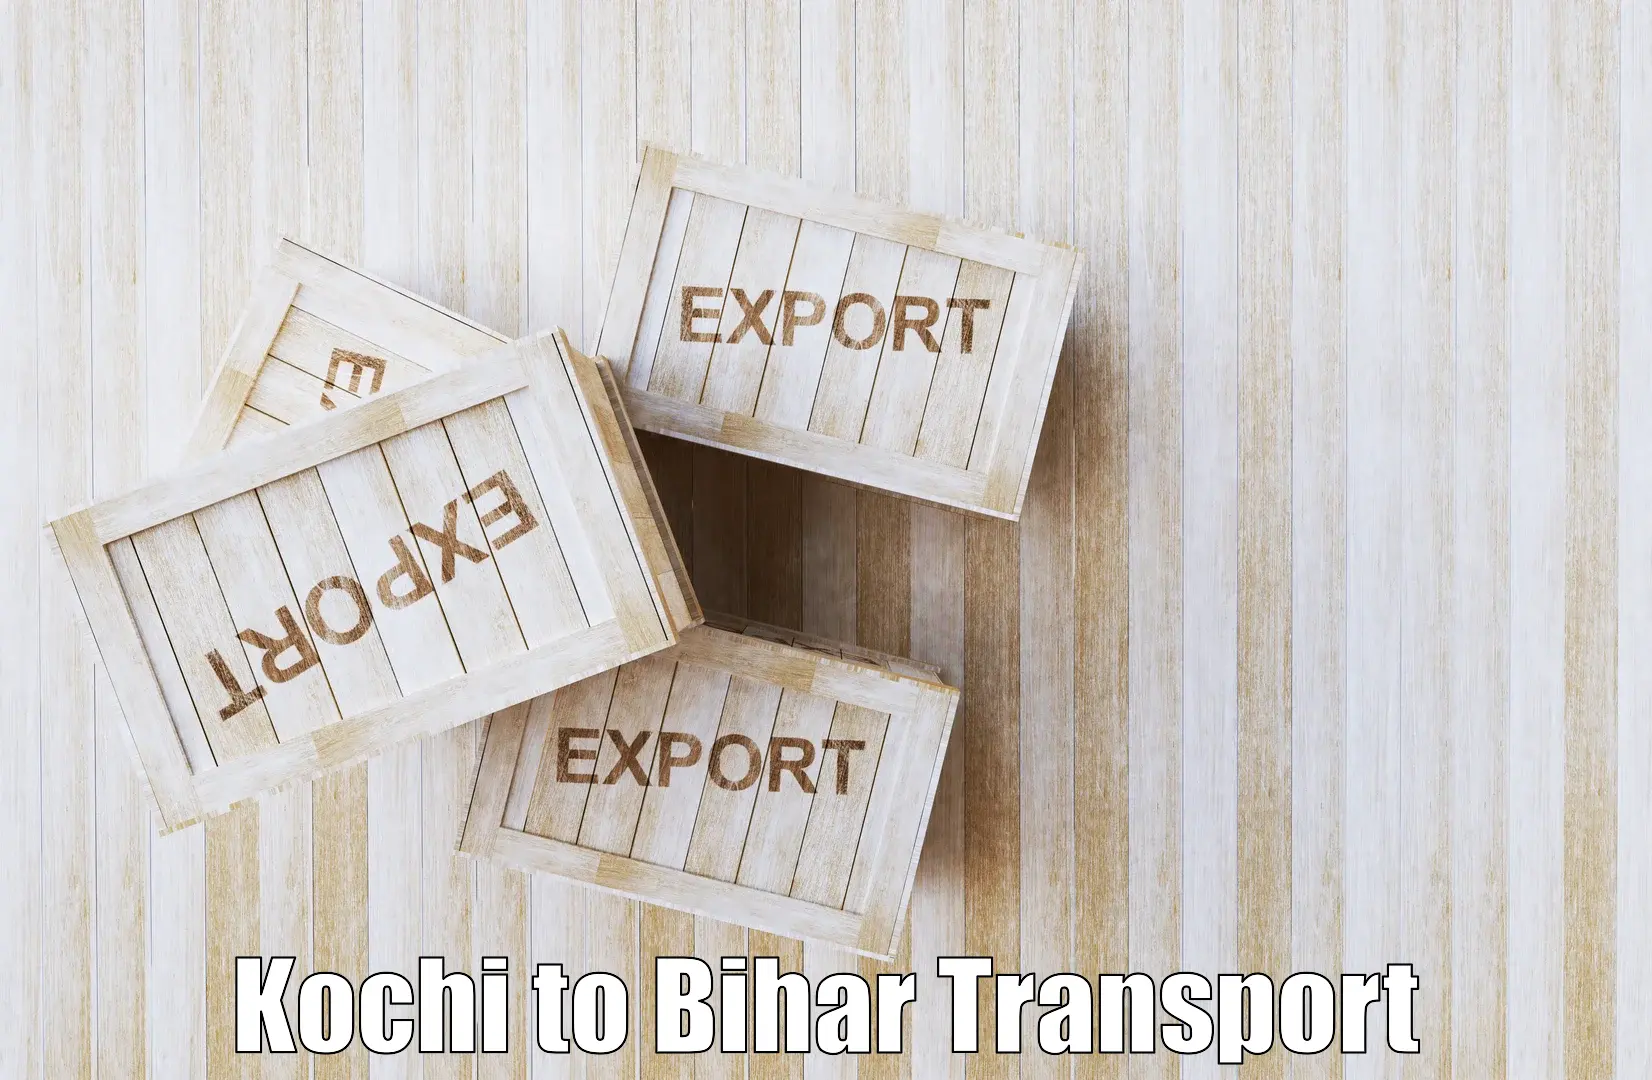 Online transport service Kochi to Dehri